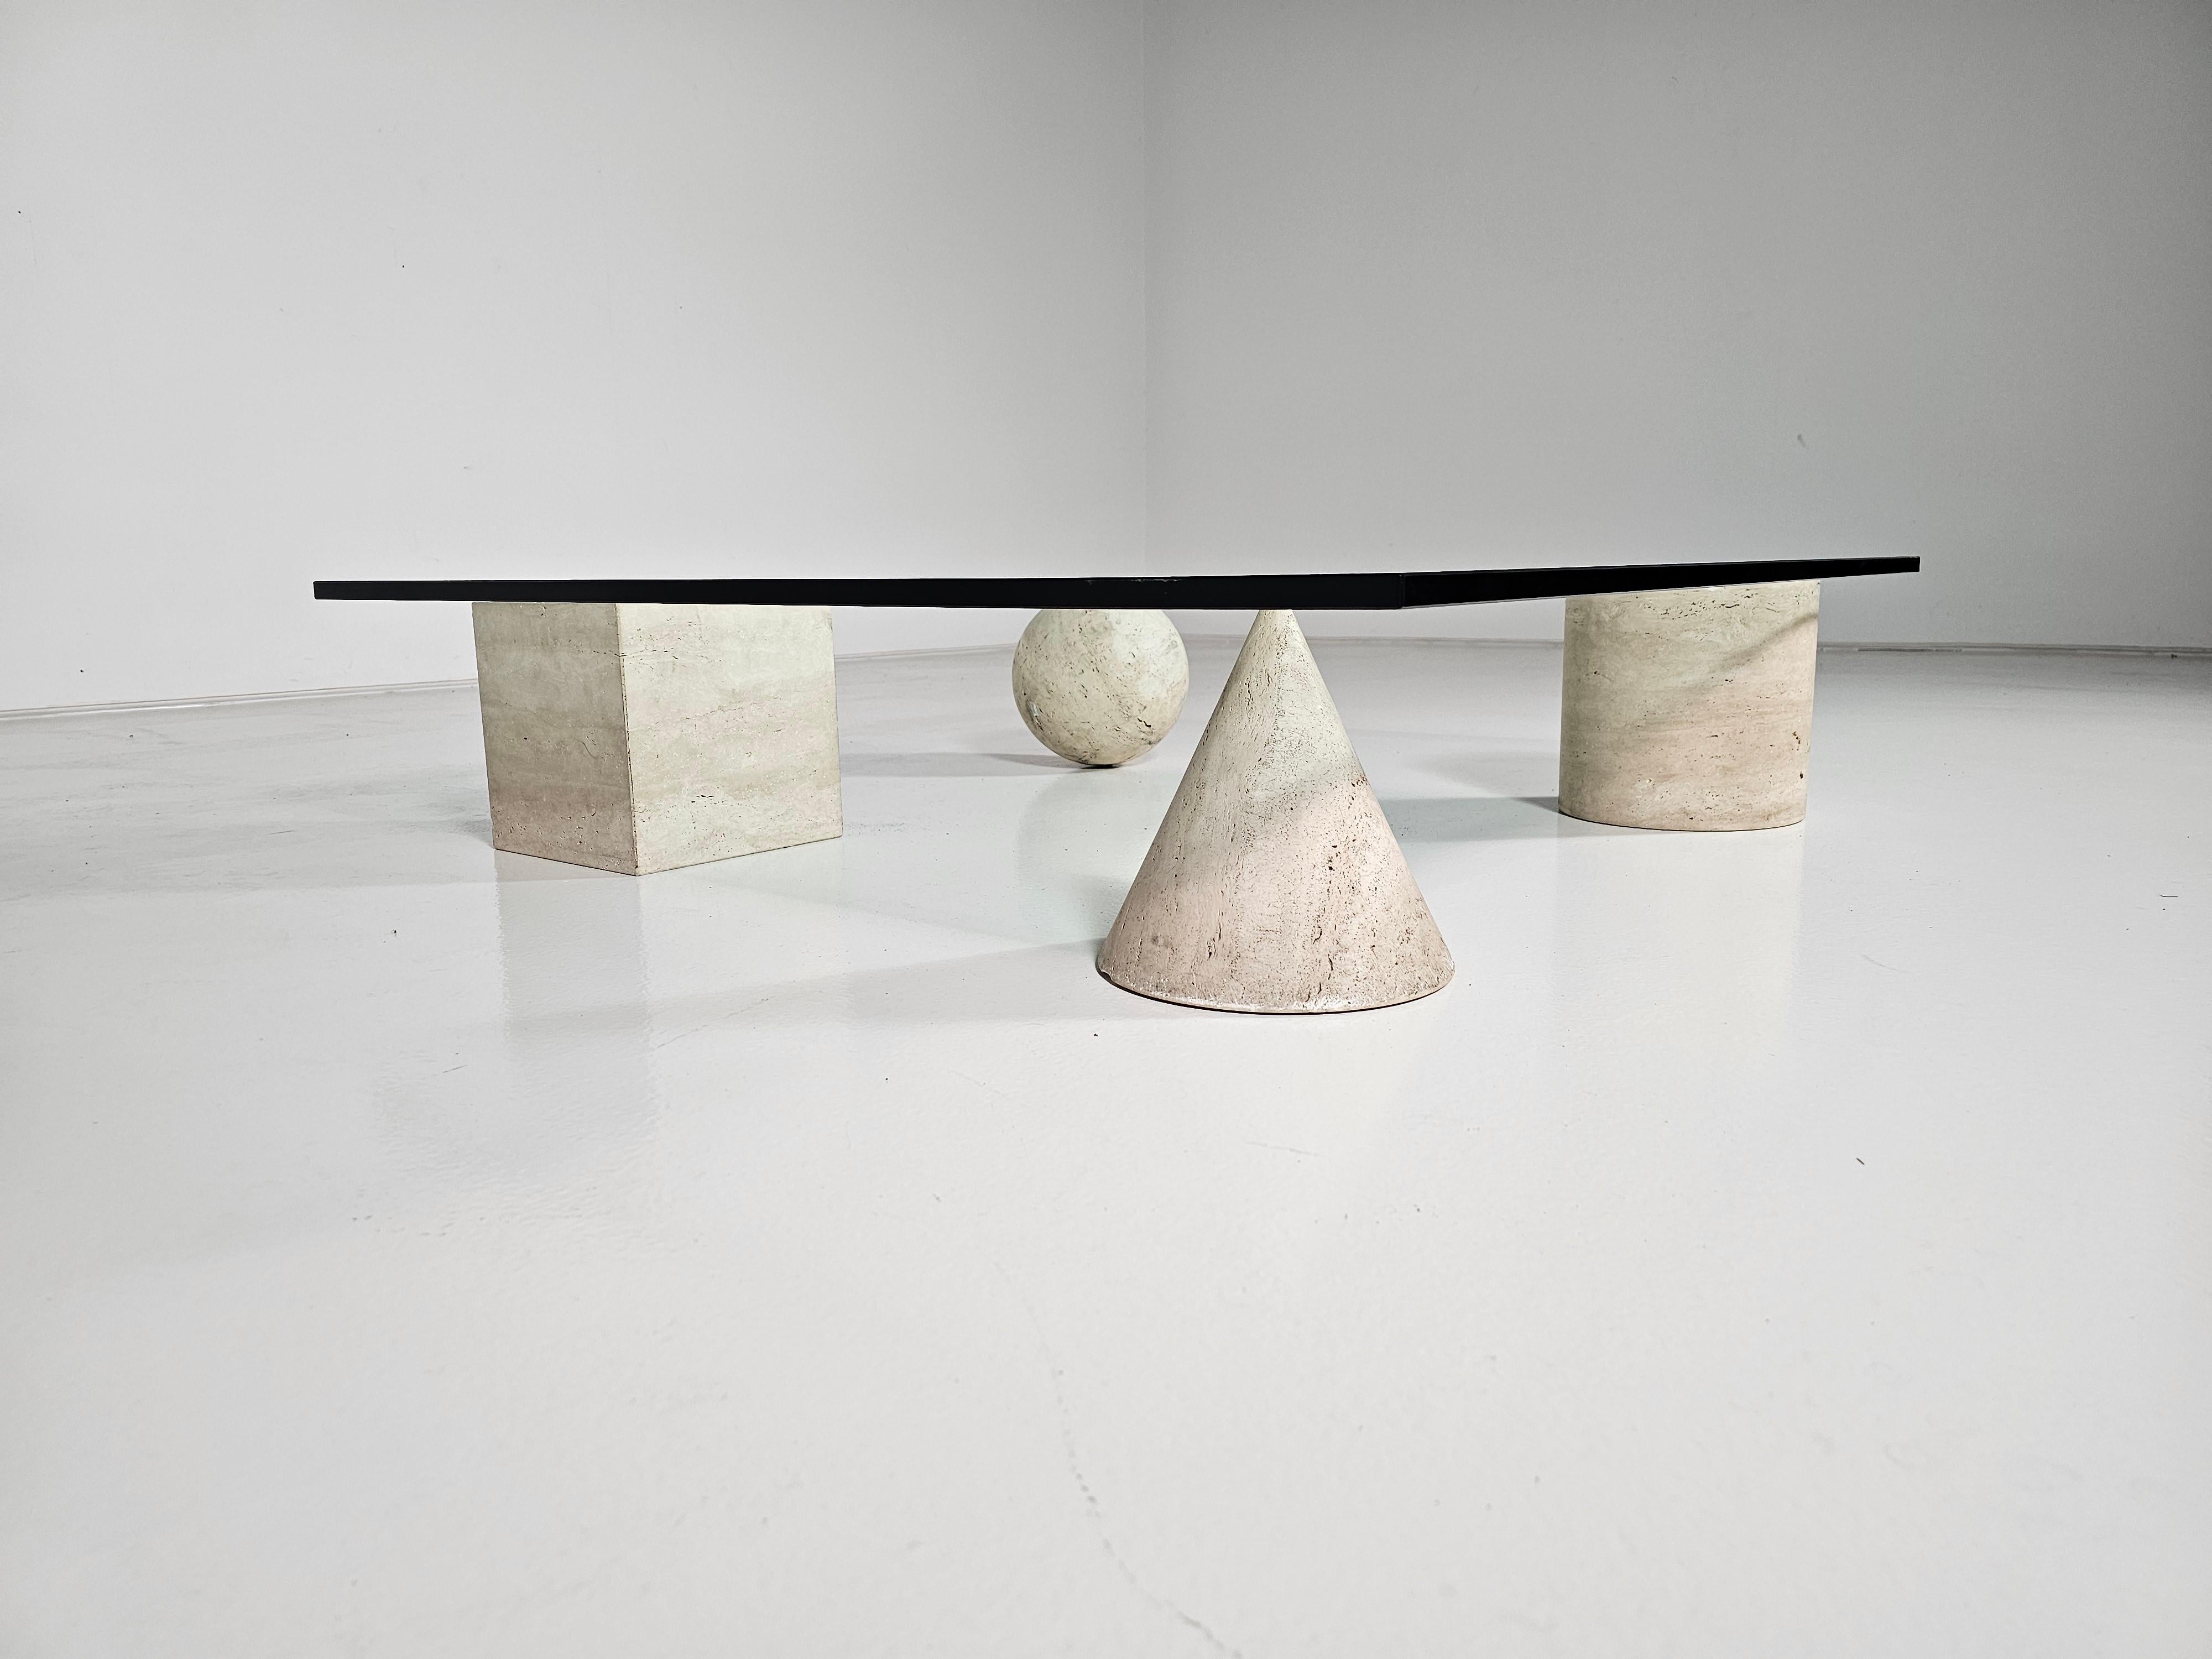 Skulpturaler Metafora Couchtisch aus Travertin, entworfen von Lella und Massimo Vignelli. in den 1970er Jahren. Inspiriert von den vier Formen der euklidischen Geometrie, dem Würfel, der Pyramide, dem Zylinder und der Kugel, können die vier Elemente